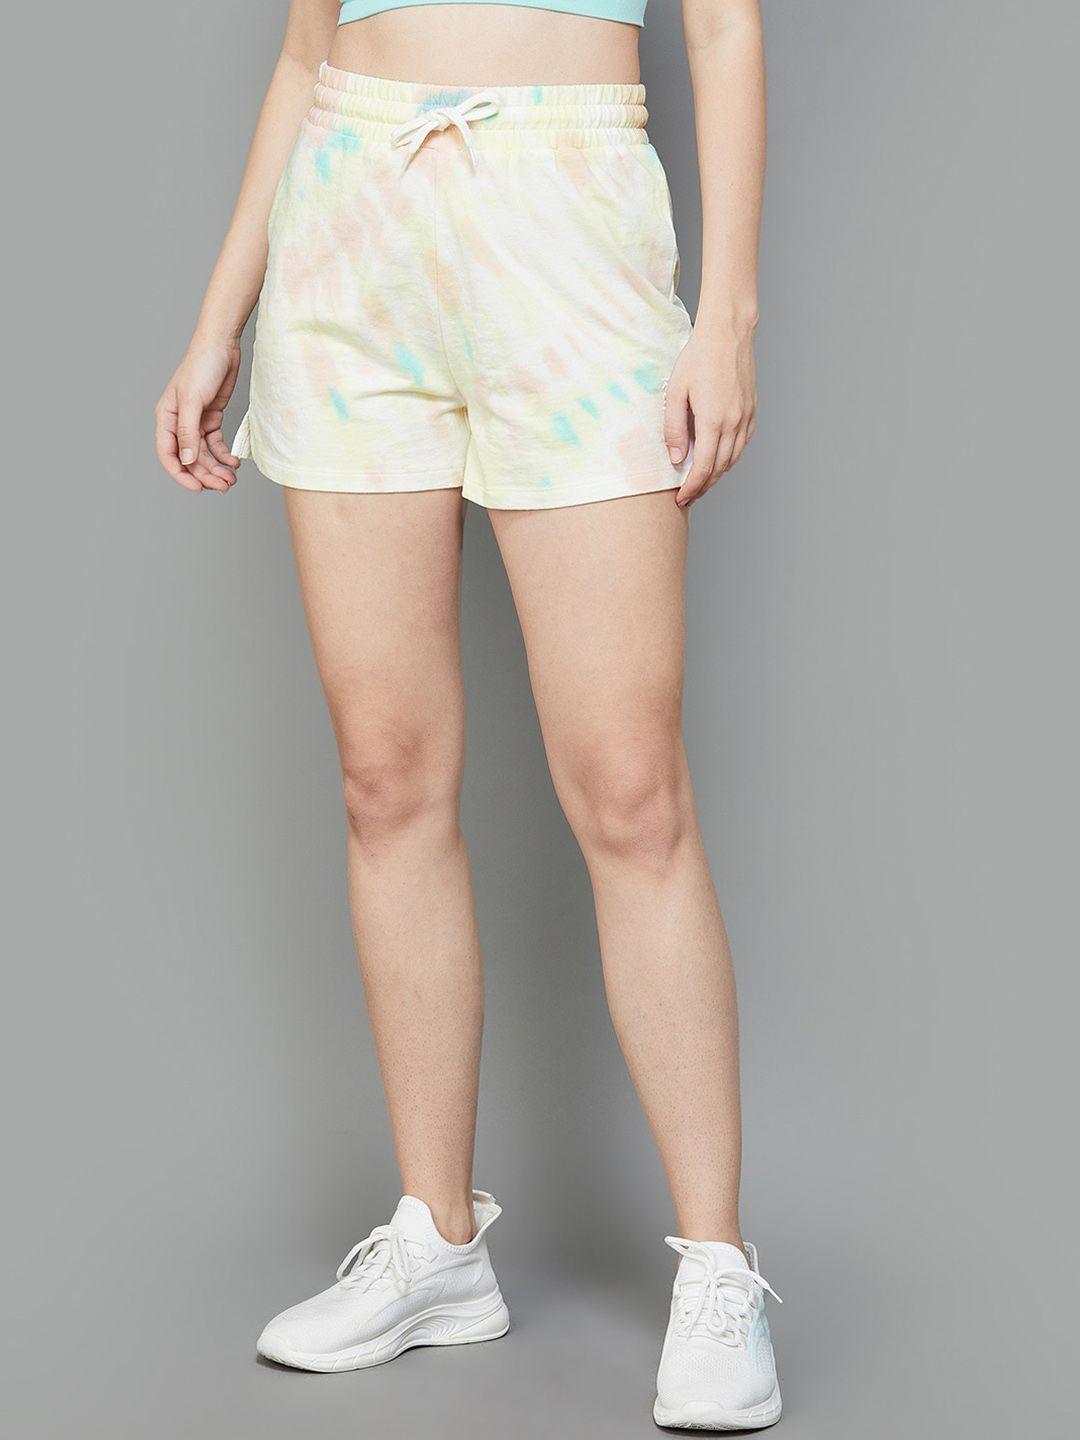 kappa women abstract printed shorts